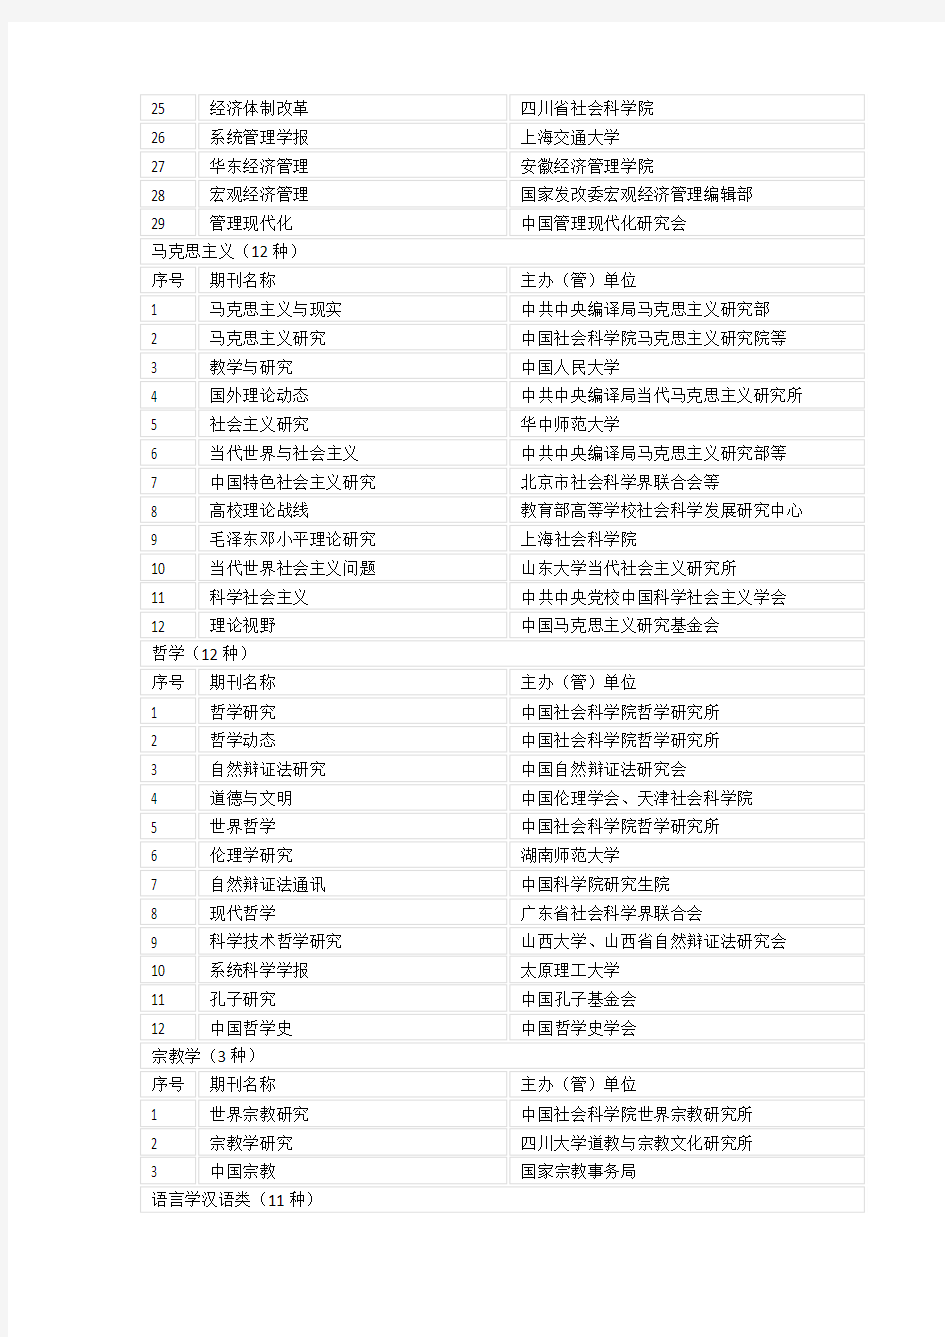 南京大学CSSCI(2012-2013)来源期刊目录(公示版)